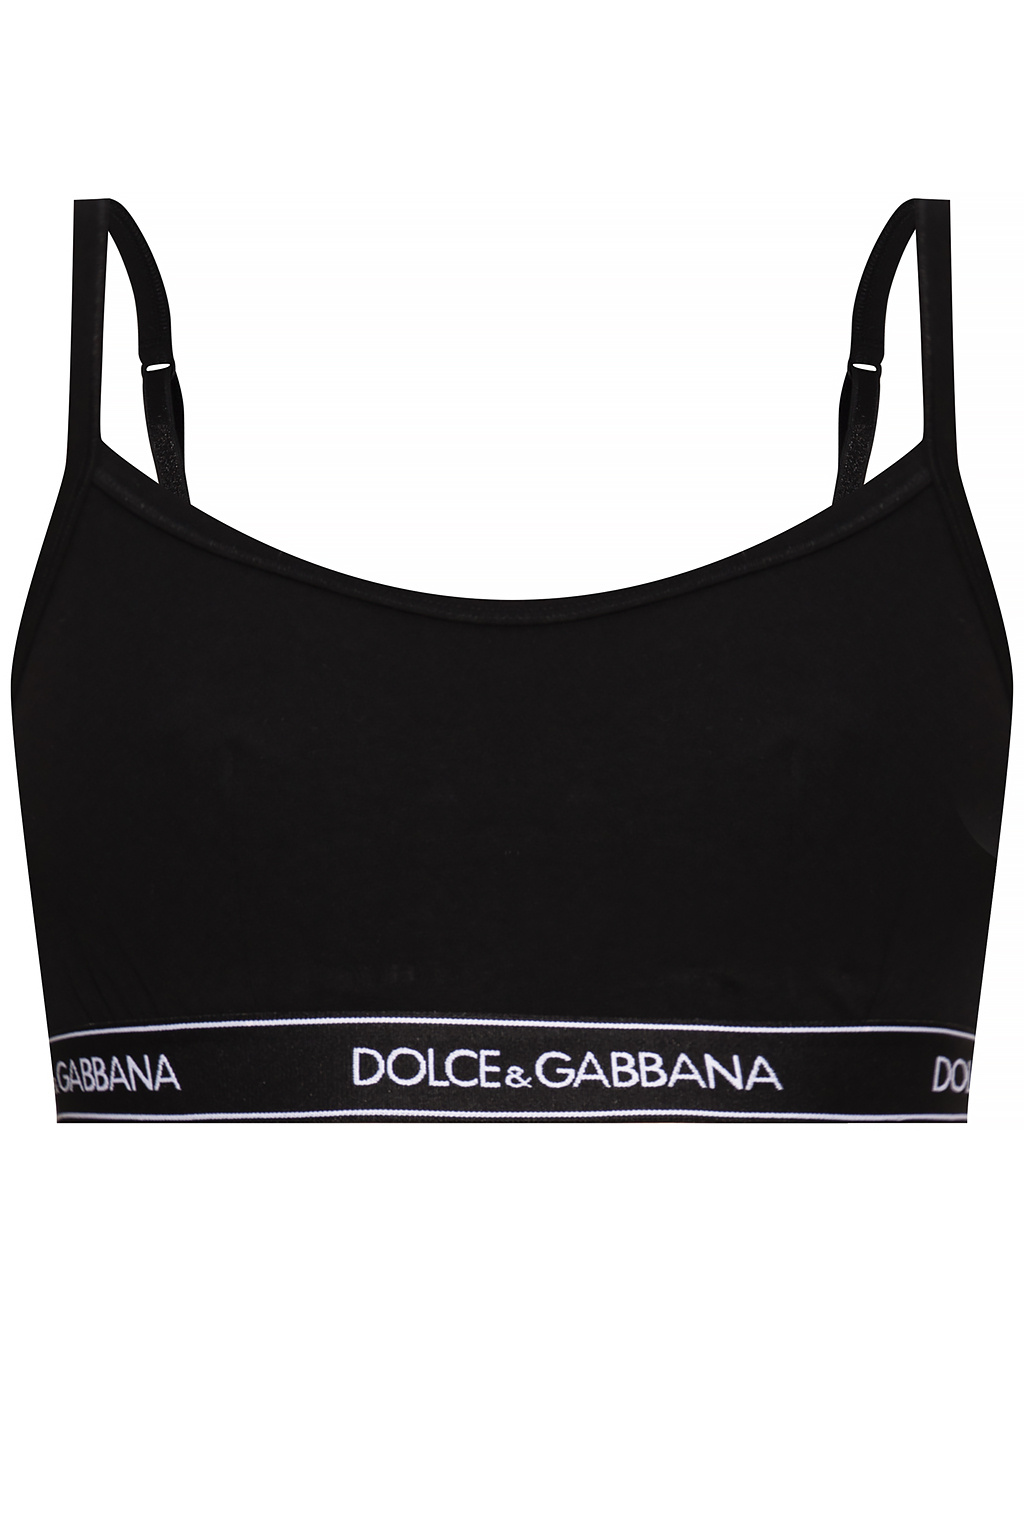 IetpShops Switzerland - 100% Authentic Dolce Gabbana szary wełny spodnie  capri - Bra with logo Dolce & Gabbana